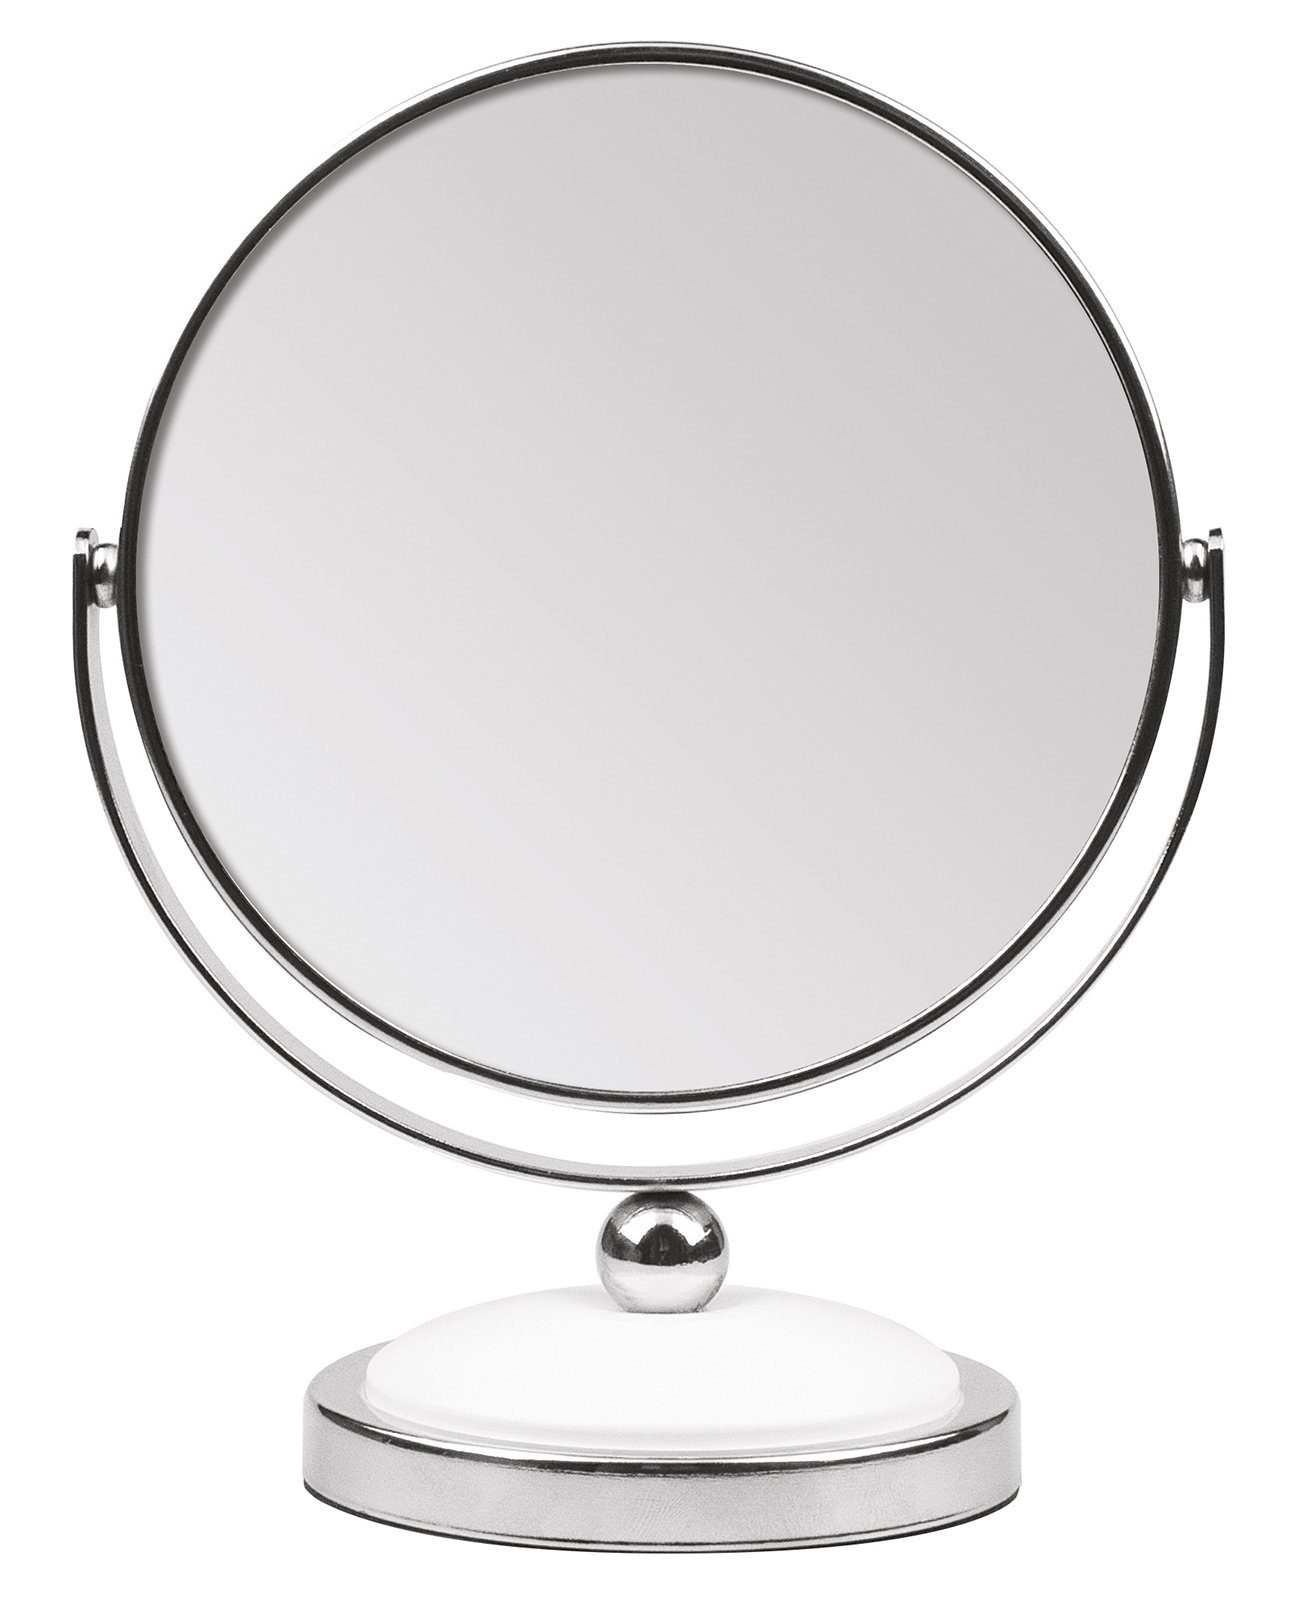 Koskaderm Spiegel Kosmetex Stand-Spiegel mit 5-fach Vergrößerung, 2 Spiegelflächen, 18cm Ø 12cm, Kosmetik-Spiegel dreh